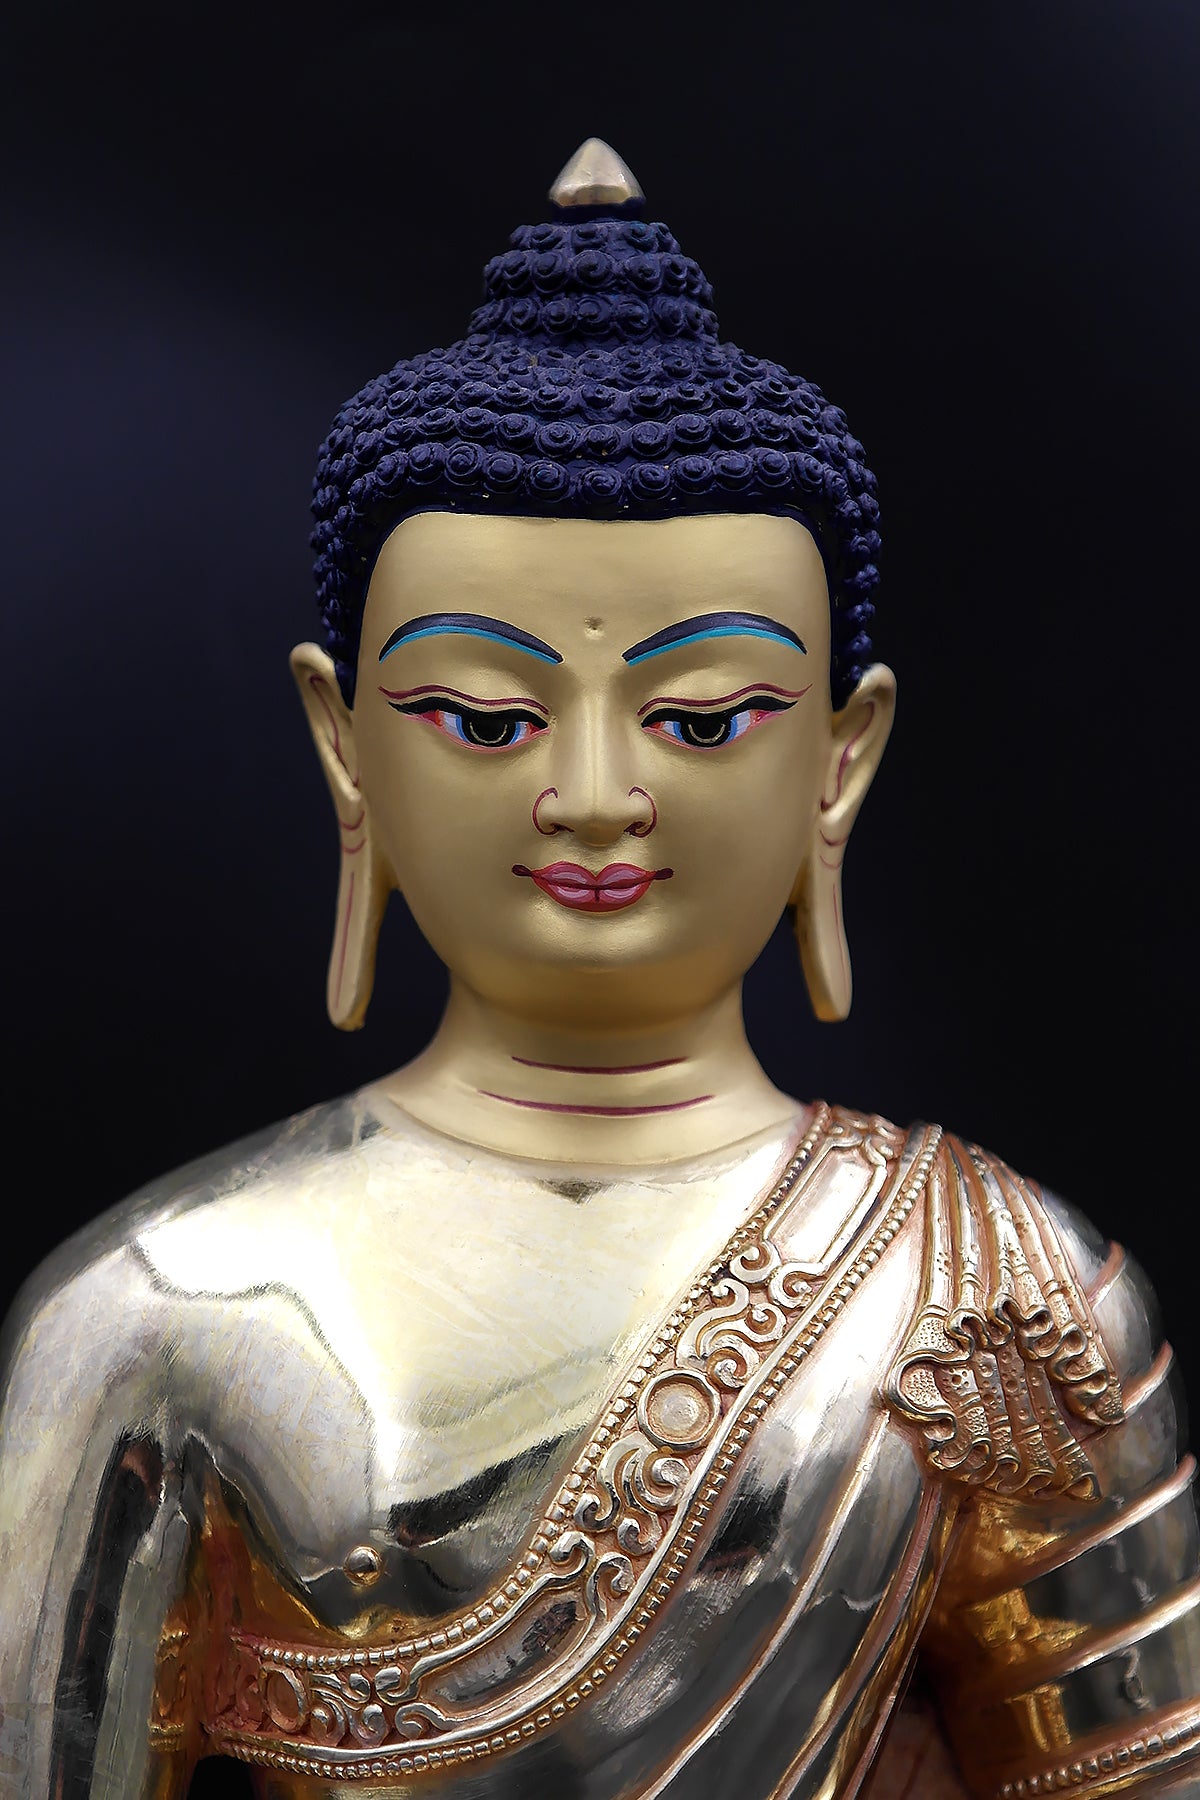 Shakyamuni Buddha Statue in Cushion, 11"